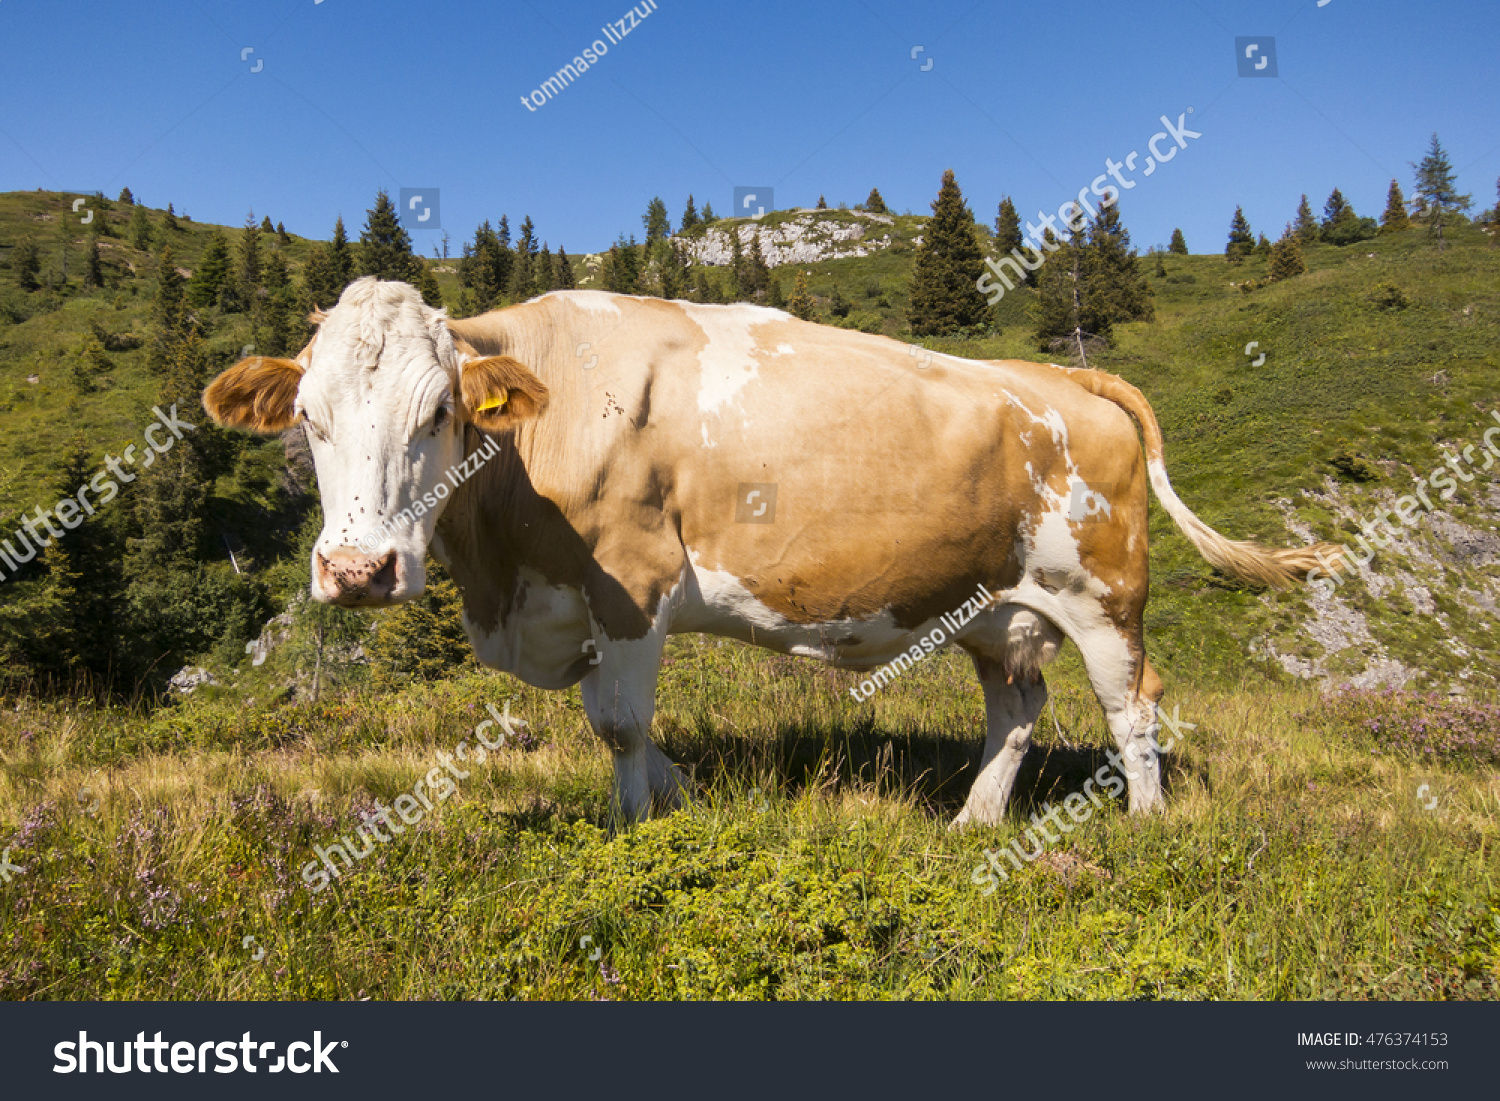 beautiful cow enjoying sunlight in the mountain #476374153